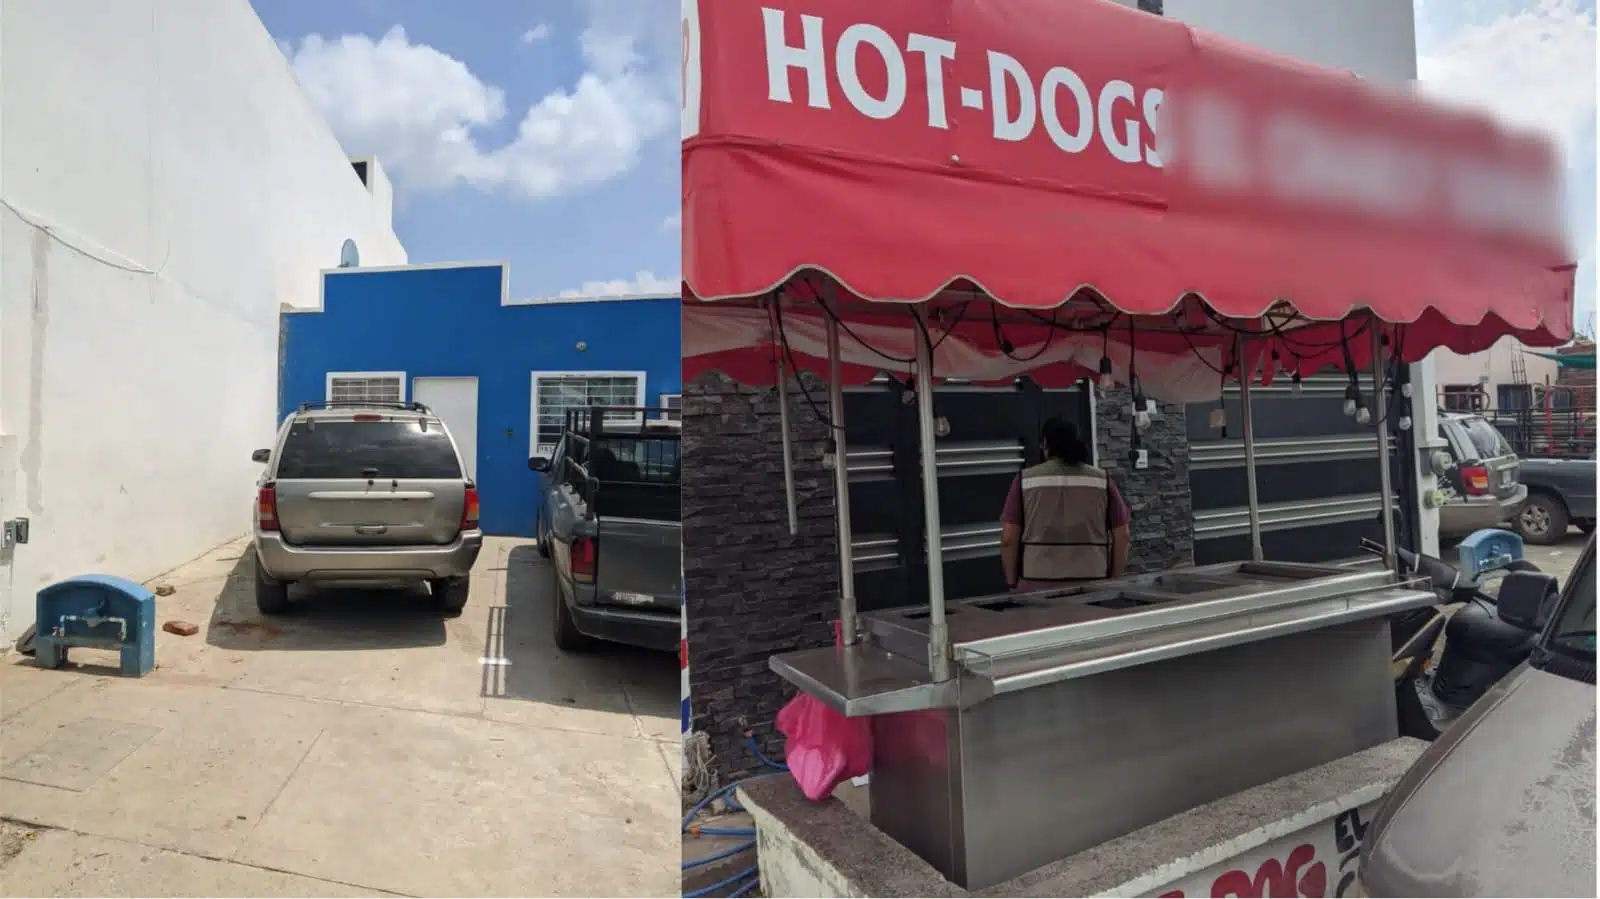 Casa azul de lado izquierdo y negocio de hotdog de lado derecho